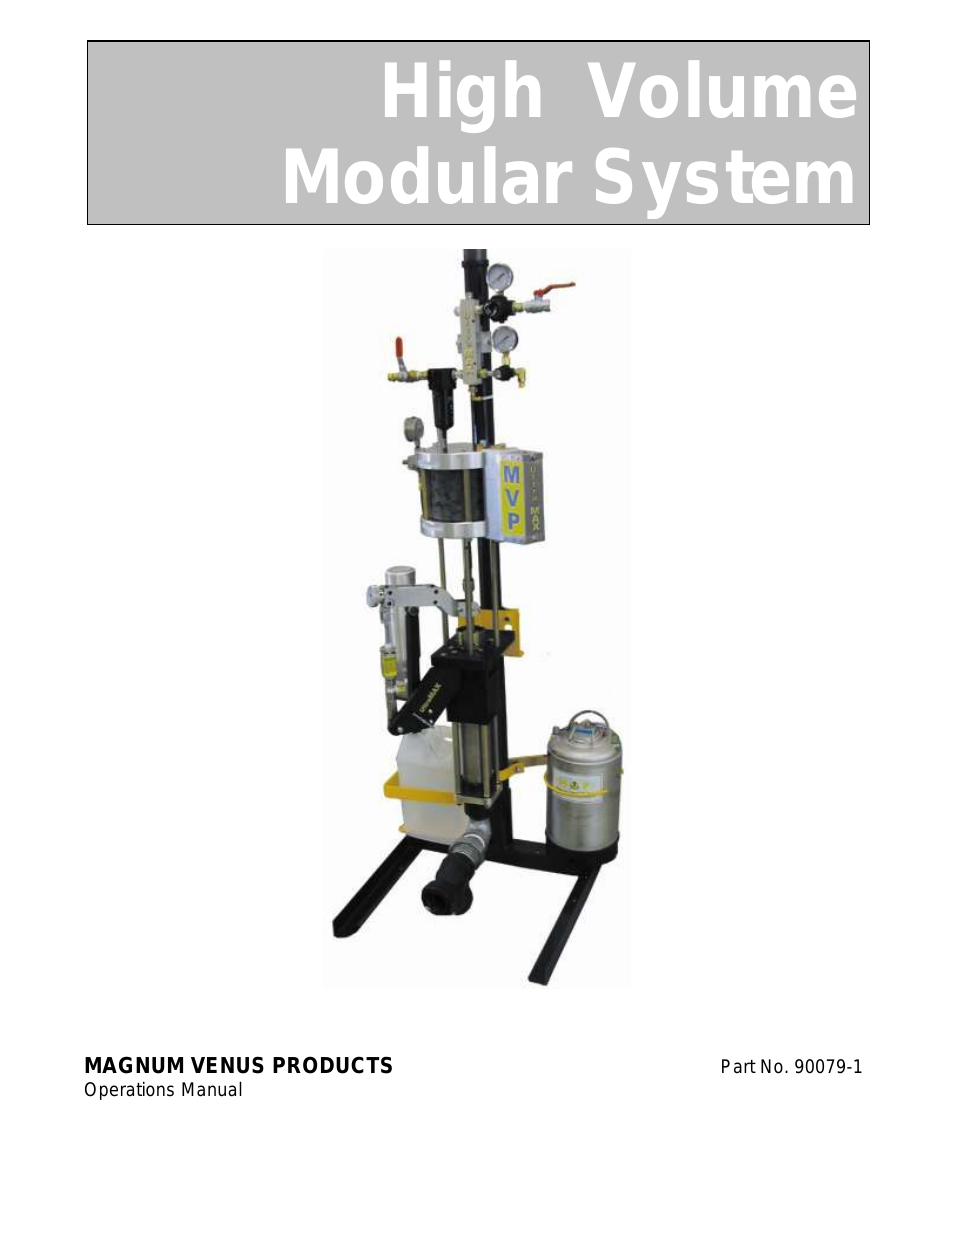 High Volume Modular System